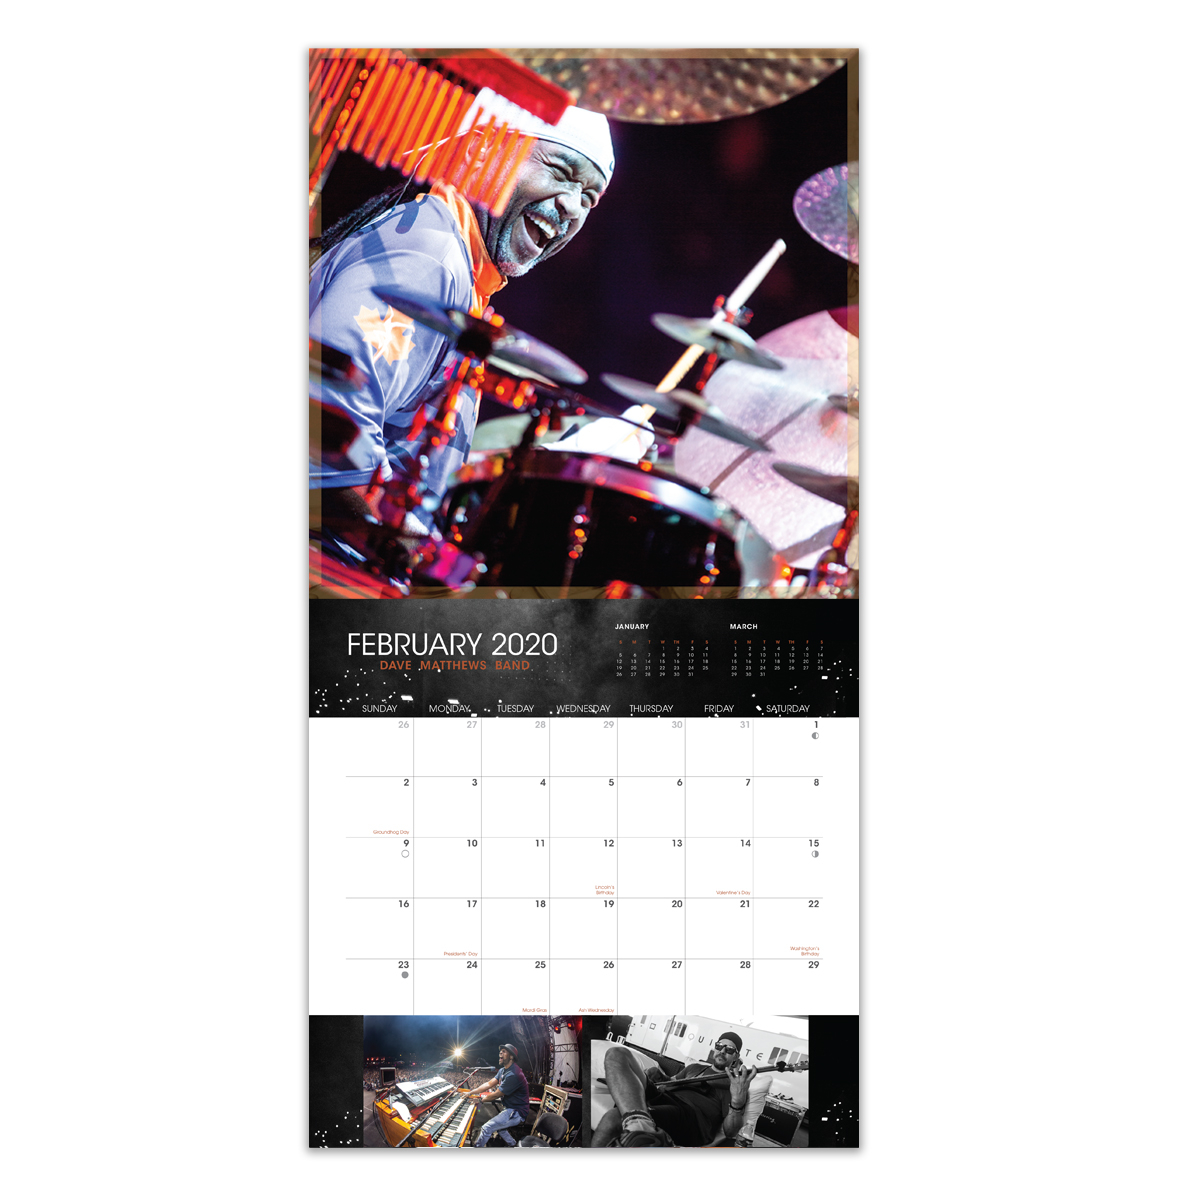 Dave Matthews Band 2024 Calendar 2024 Calendar Printable